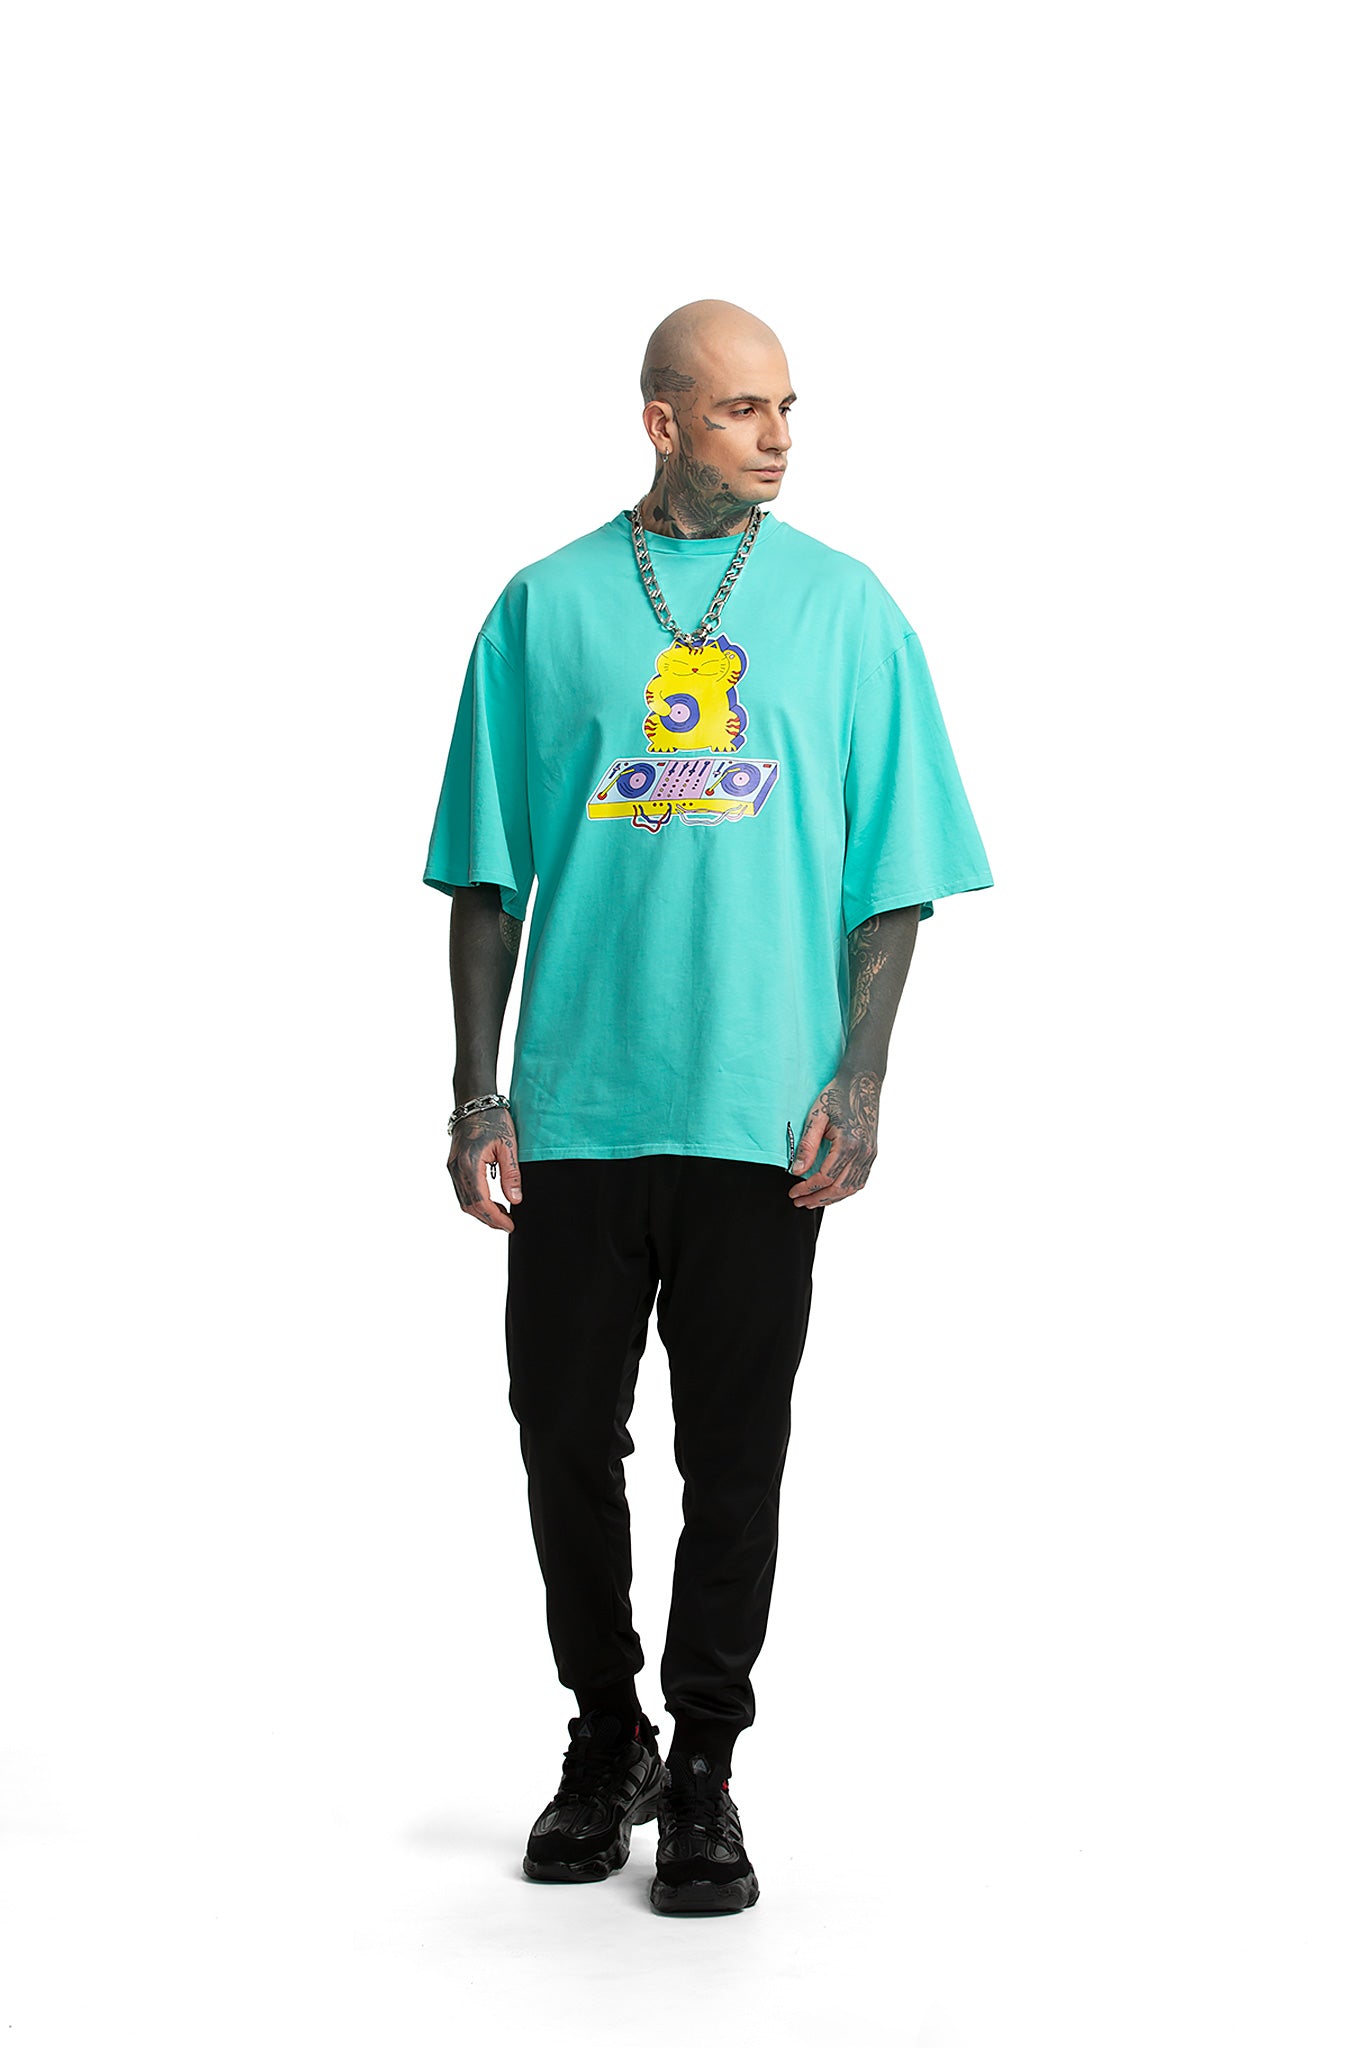 Maneki Neko oversized unisex T-shirt [turquoise]